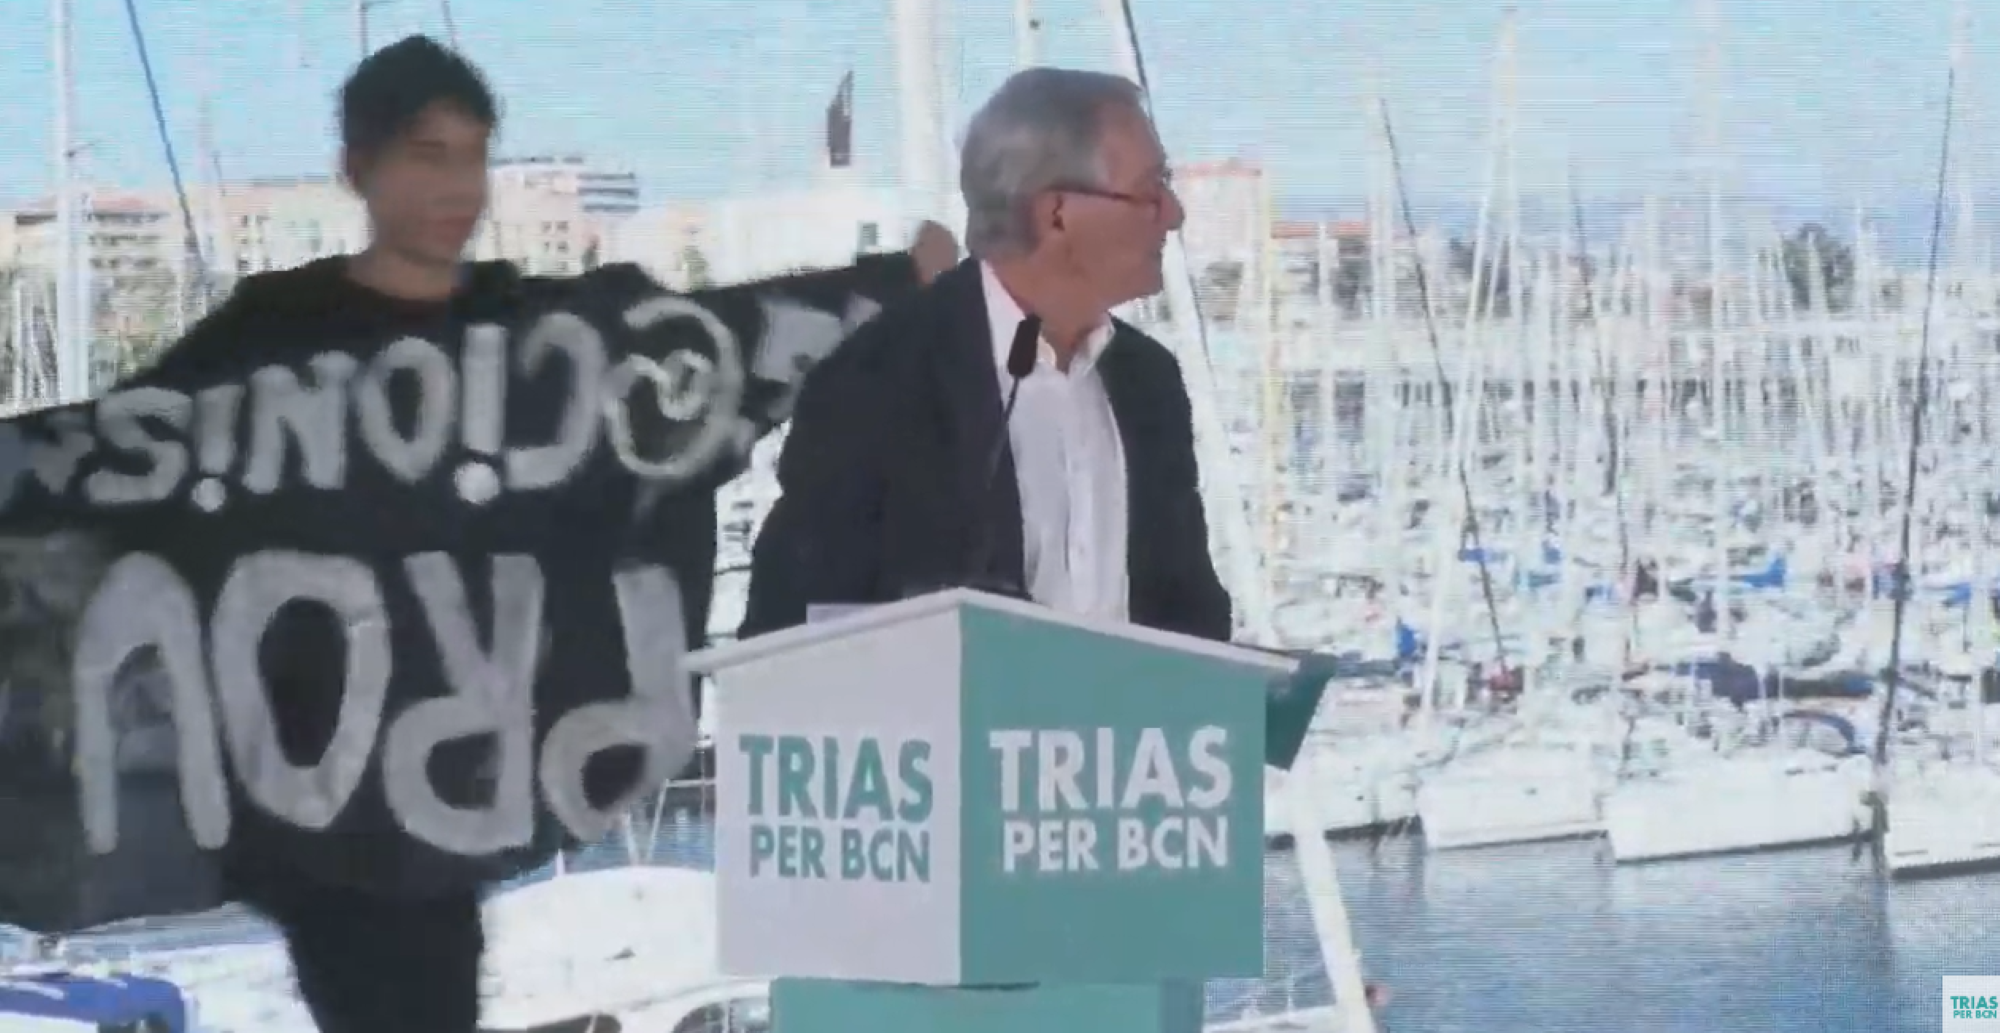 Activistes pel canvi climàtic assalten l'escenari de Trias en l'acte final de campanya | VÍDEO